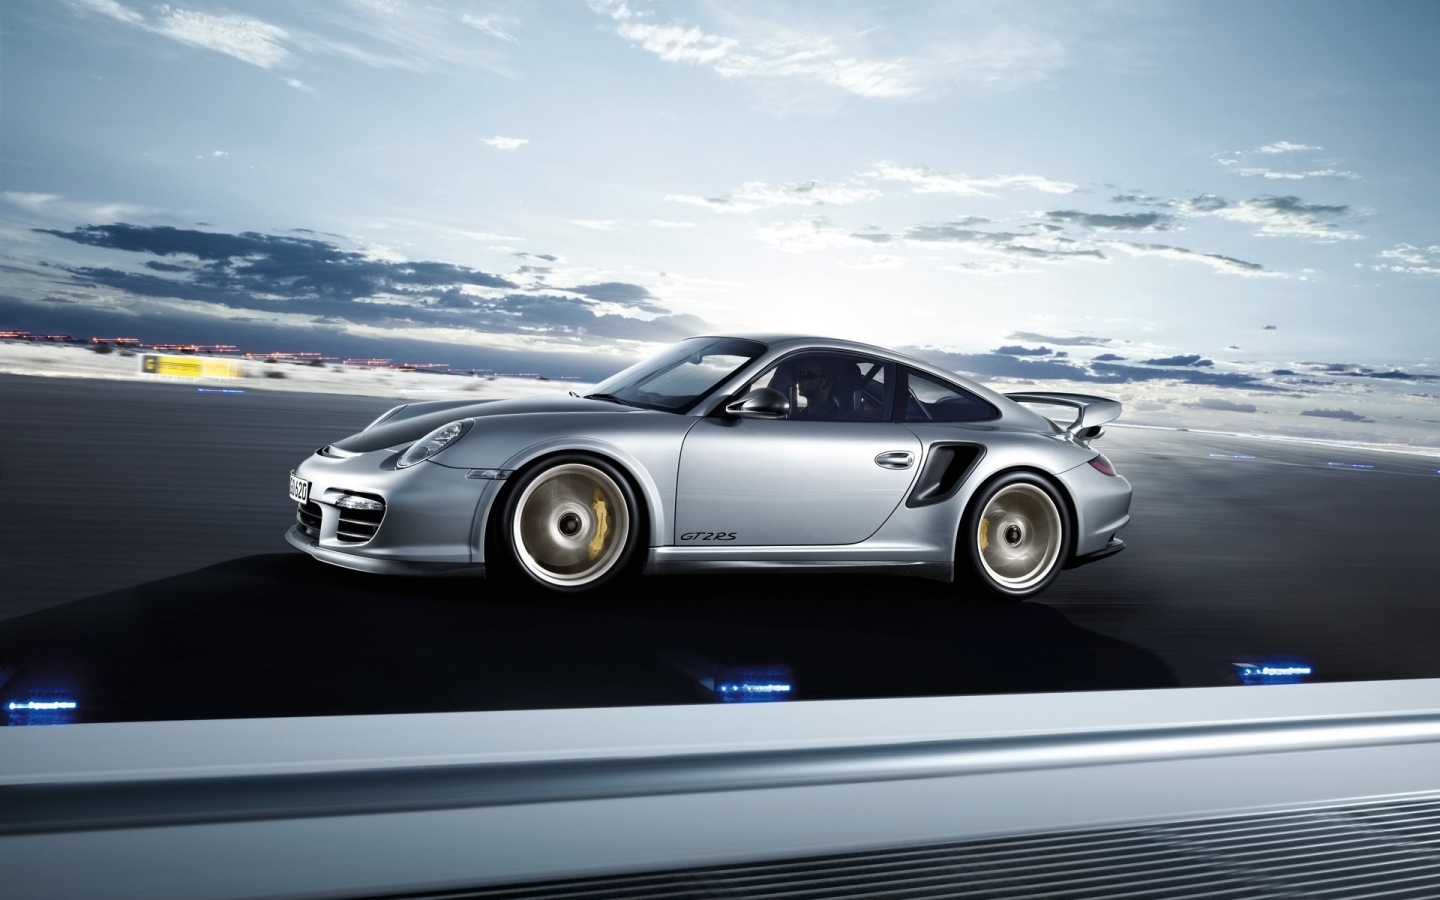 Porsche 911 GT2 RS 2011 Speed for 1440 x 900 widescreen resolution